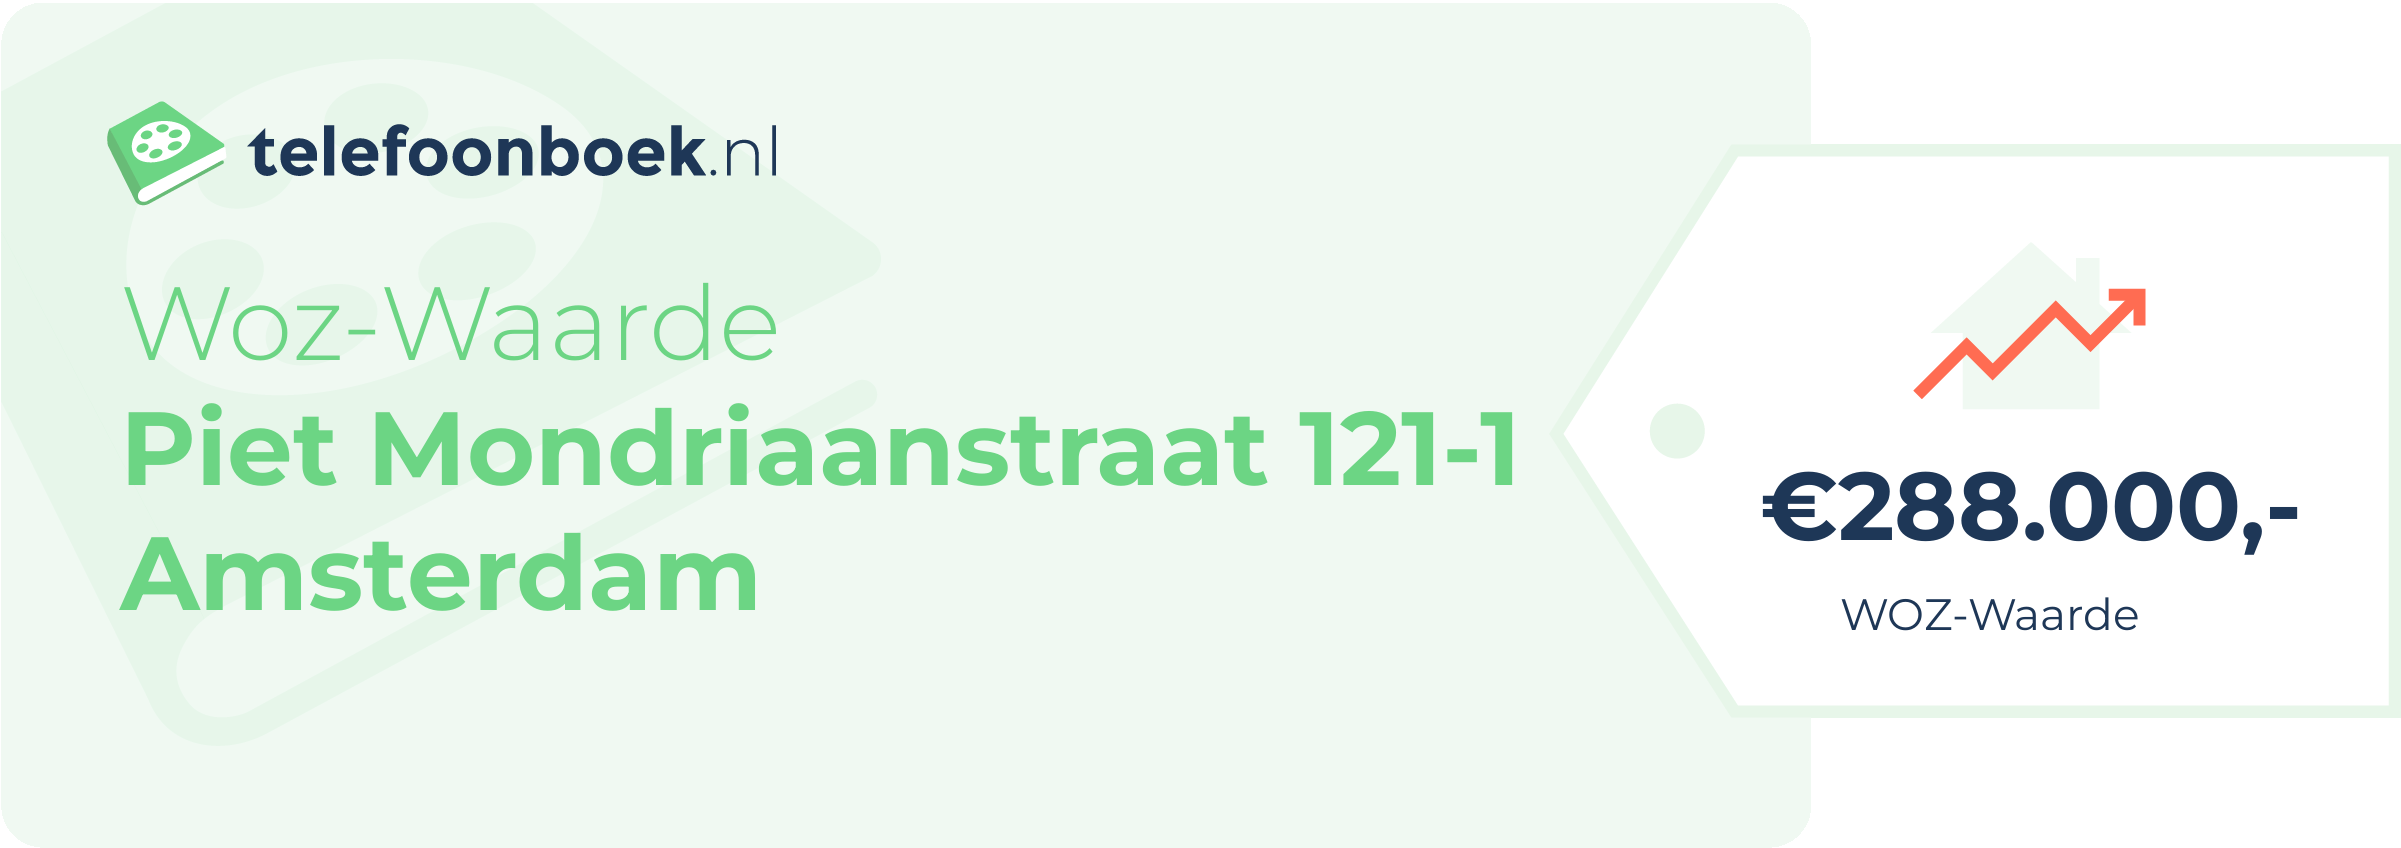 WOZ-waarde Piet Mondriaanstraat 121-1 Amsterdam